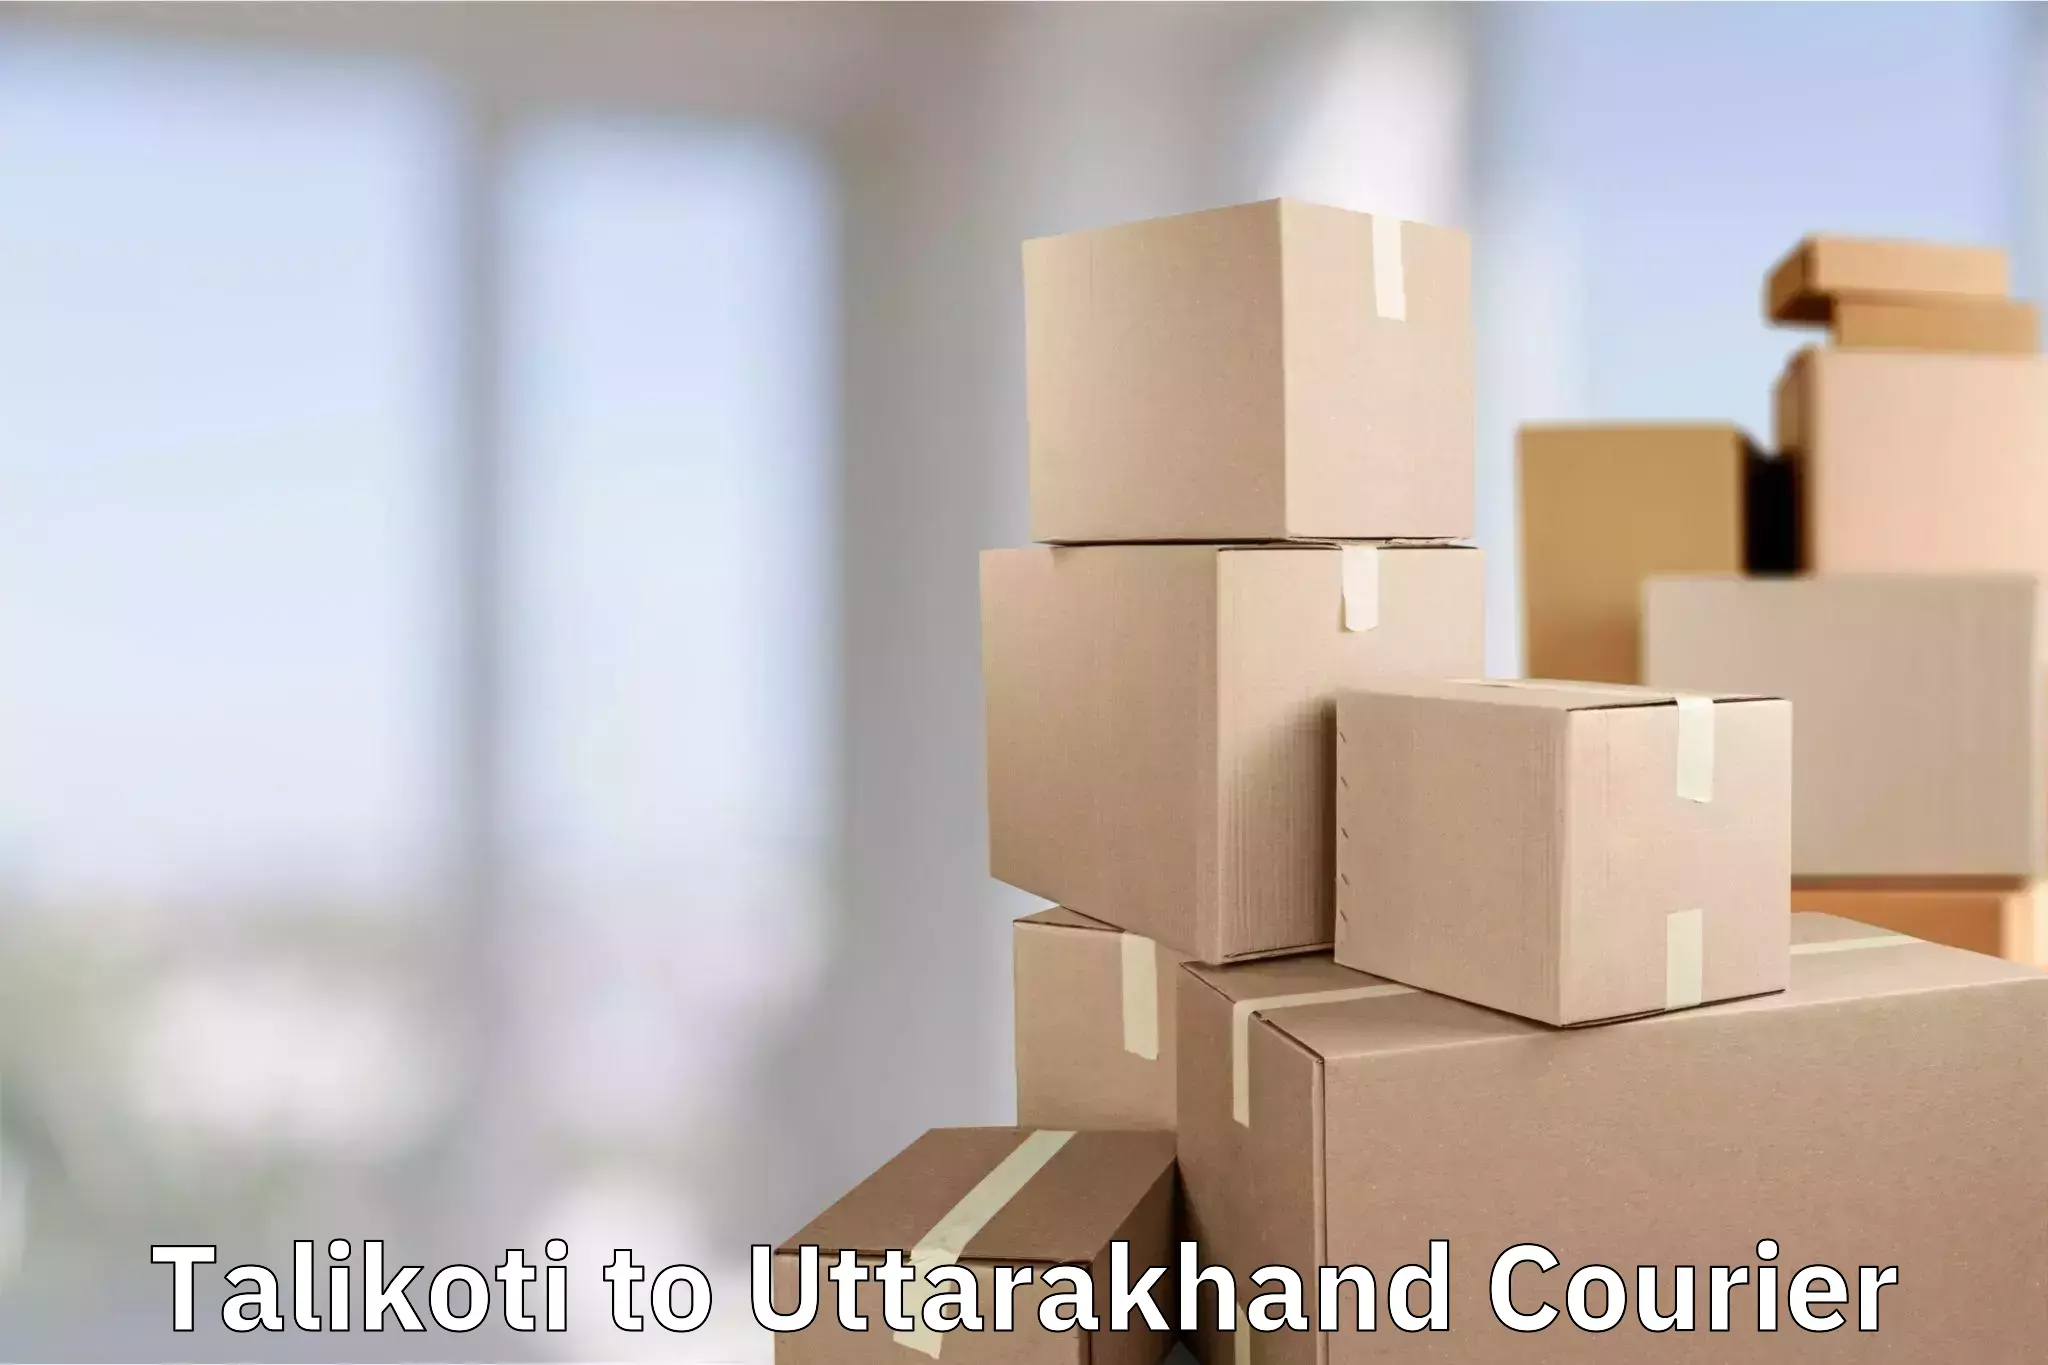 Luggage delivery estimate Talikoti to Pithoragarh